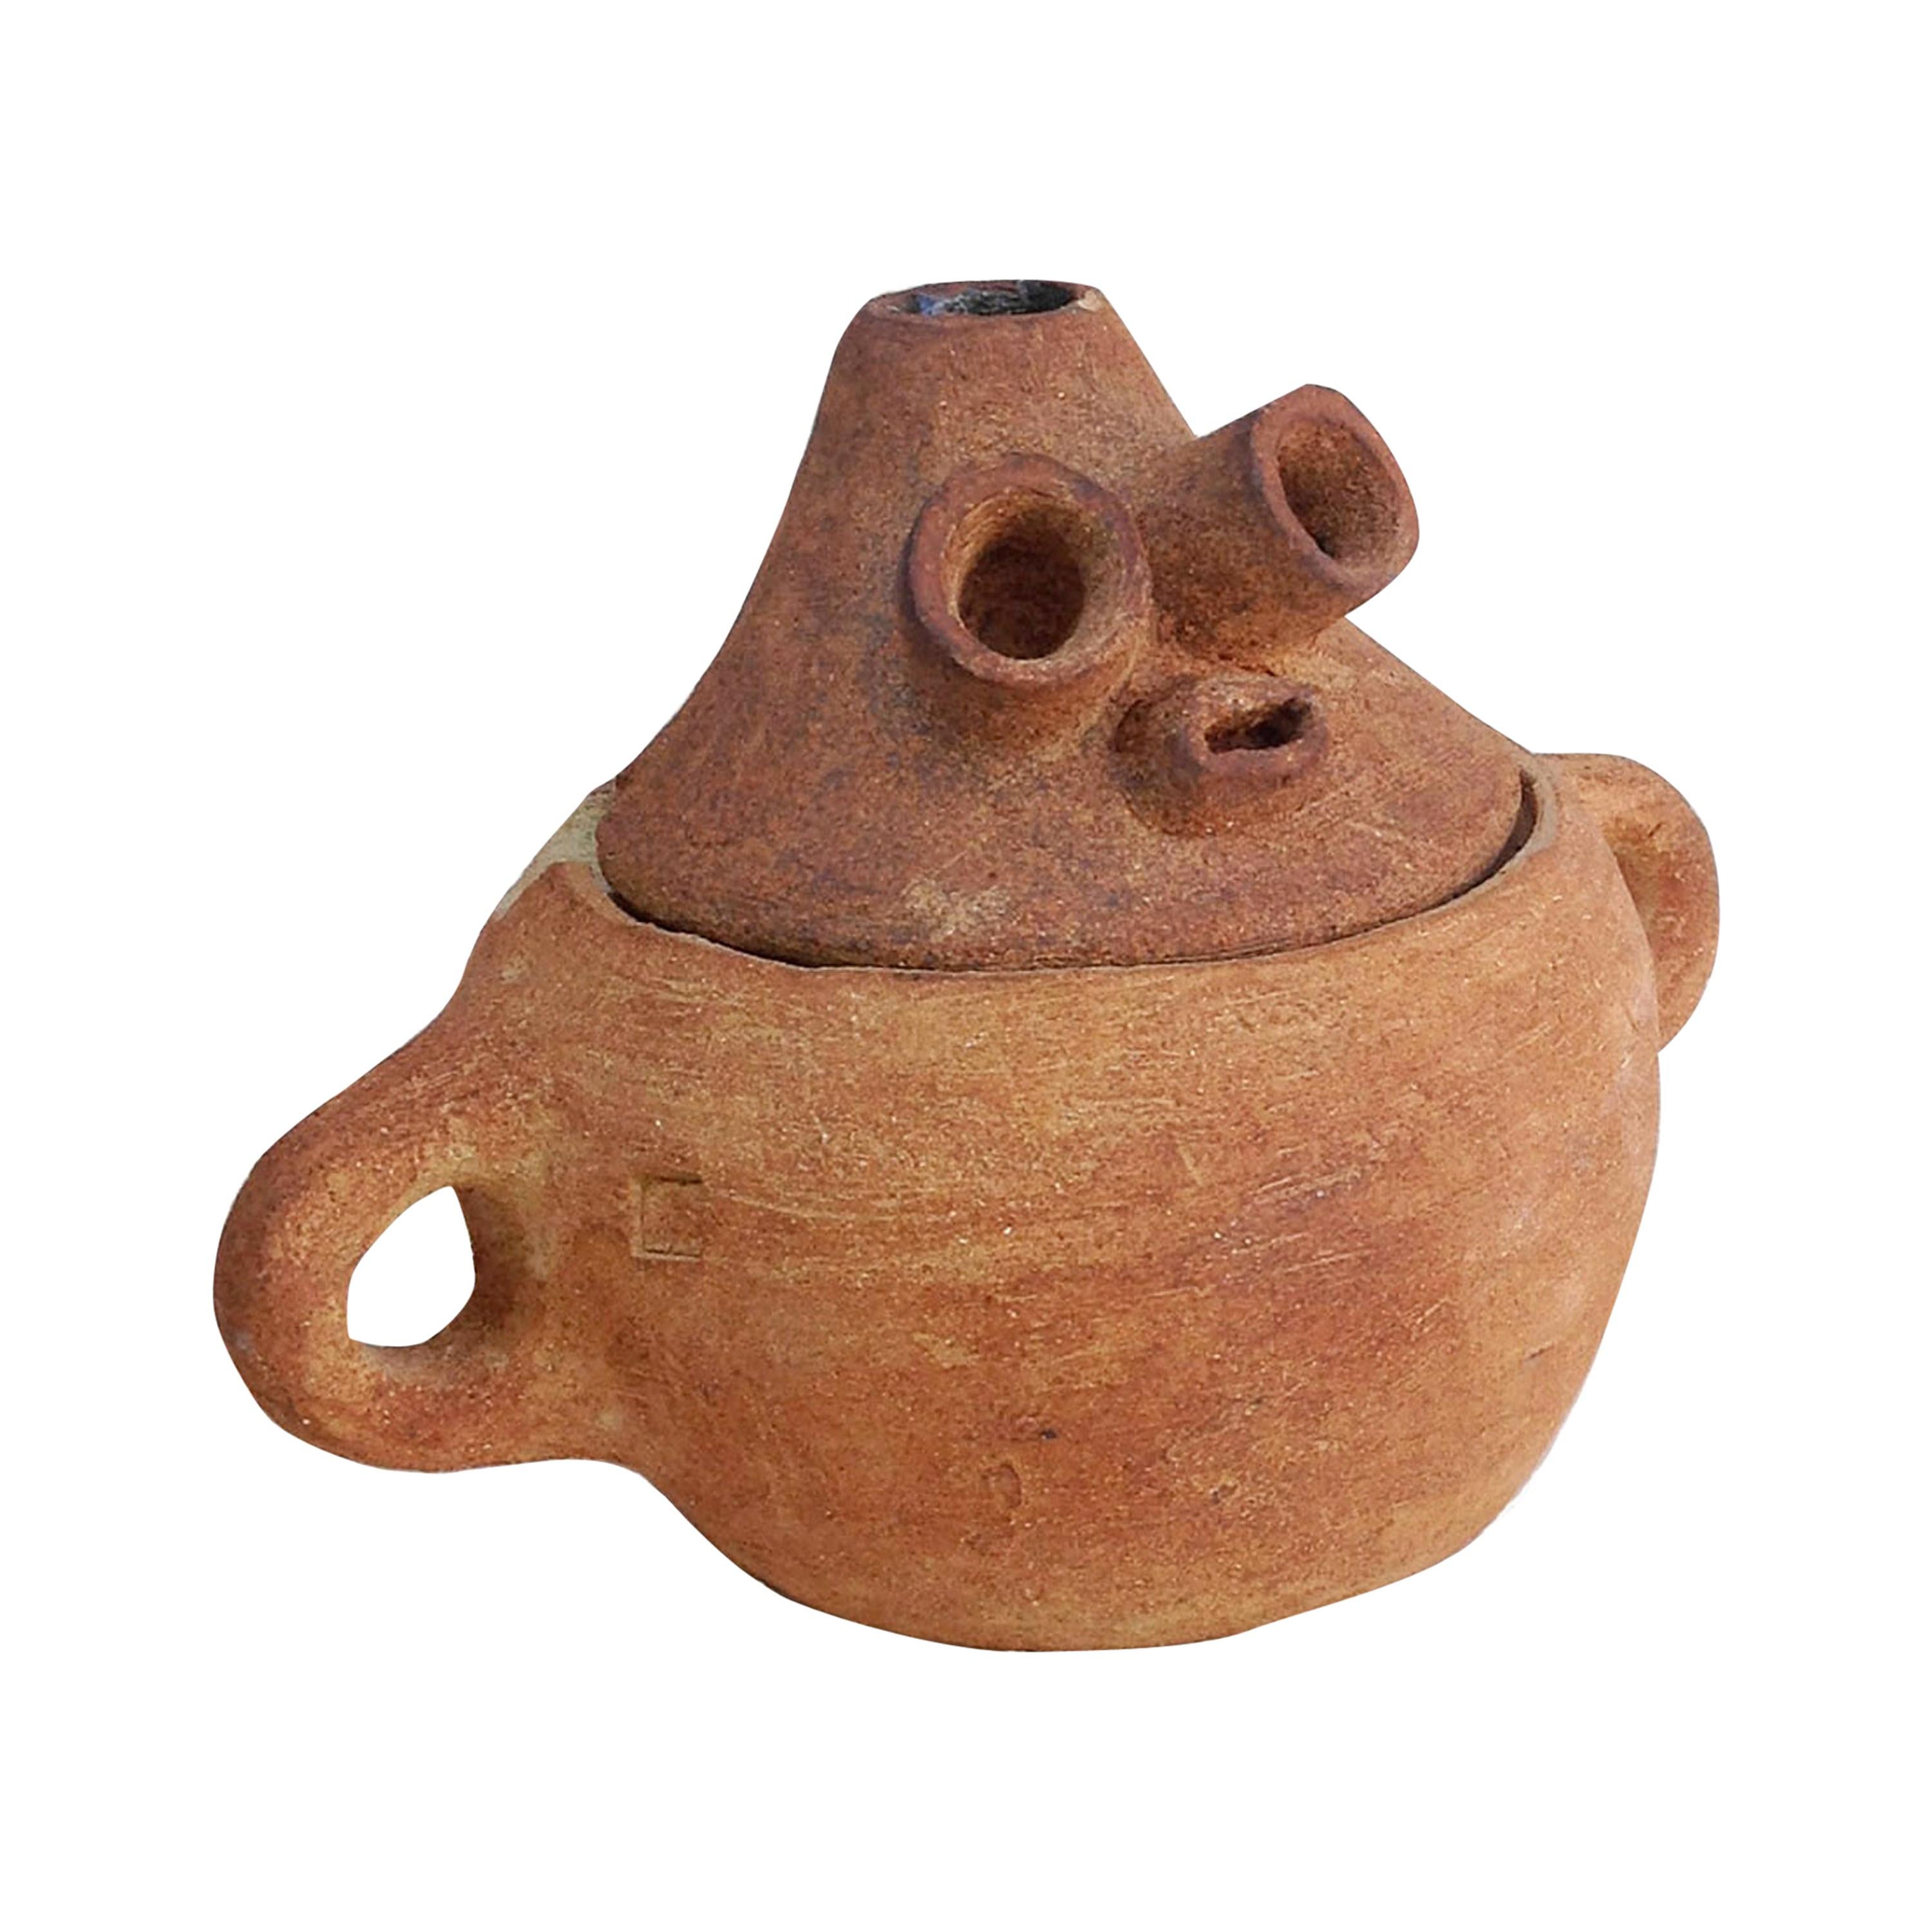 Enamel Vase, Unique by Meritxell Duran